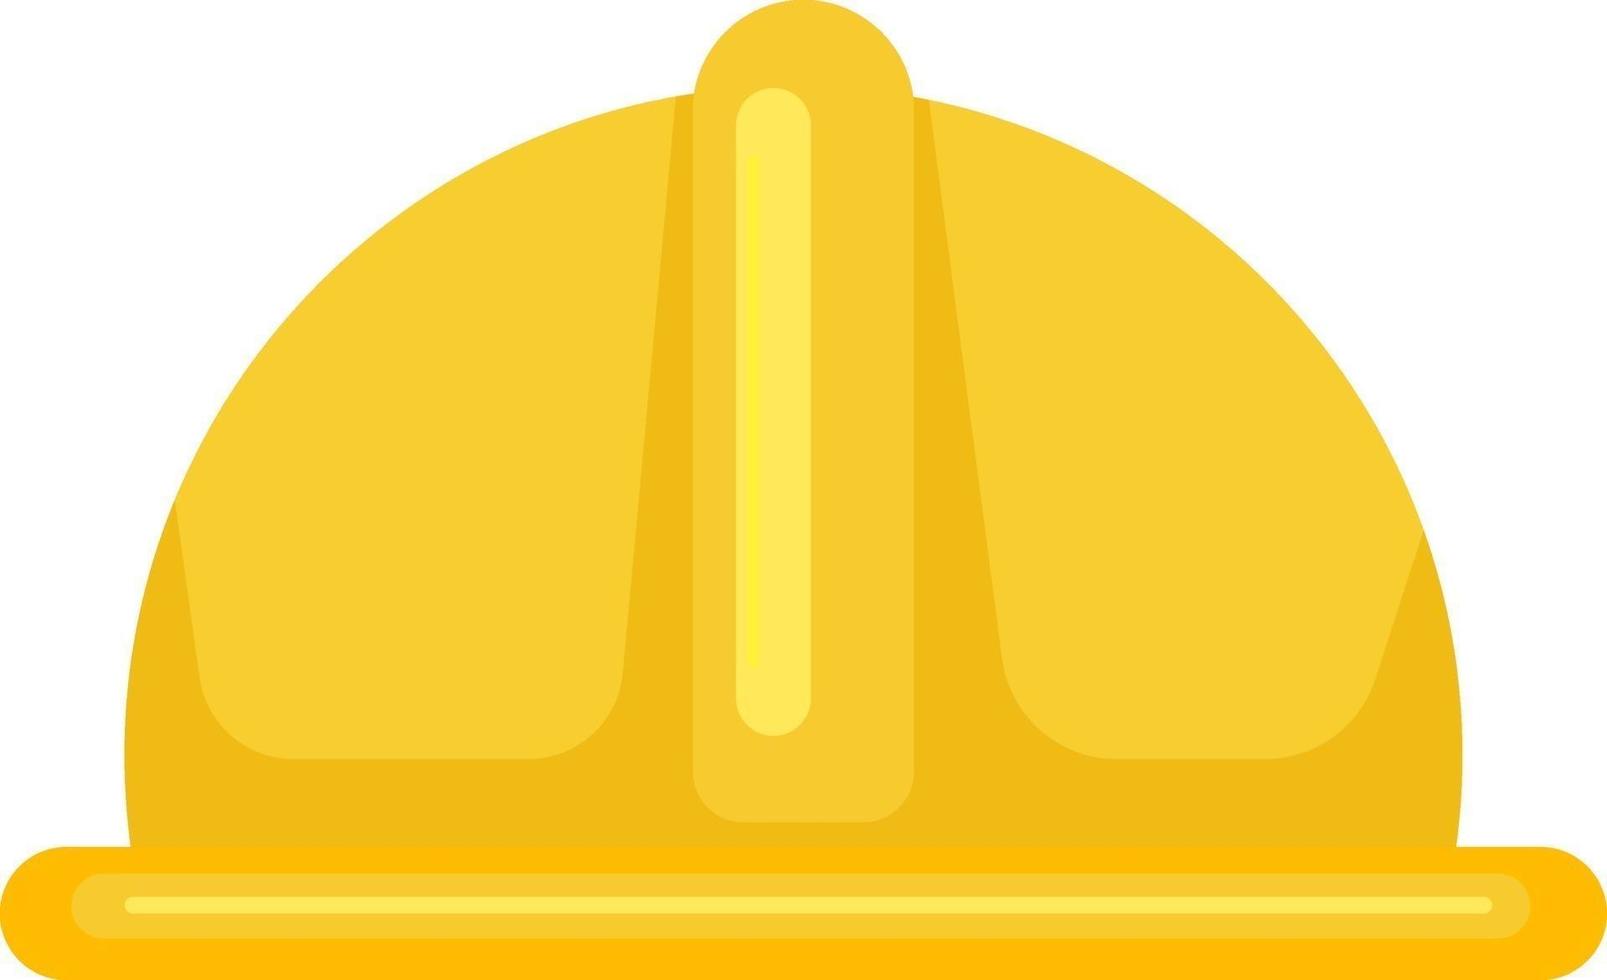 casque de travail jaune, illustration, vecteur sur fond blanc.